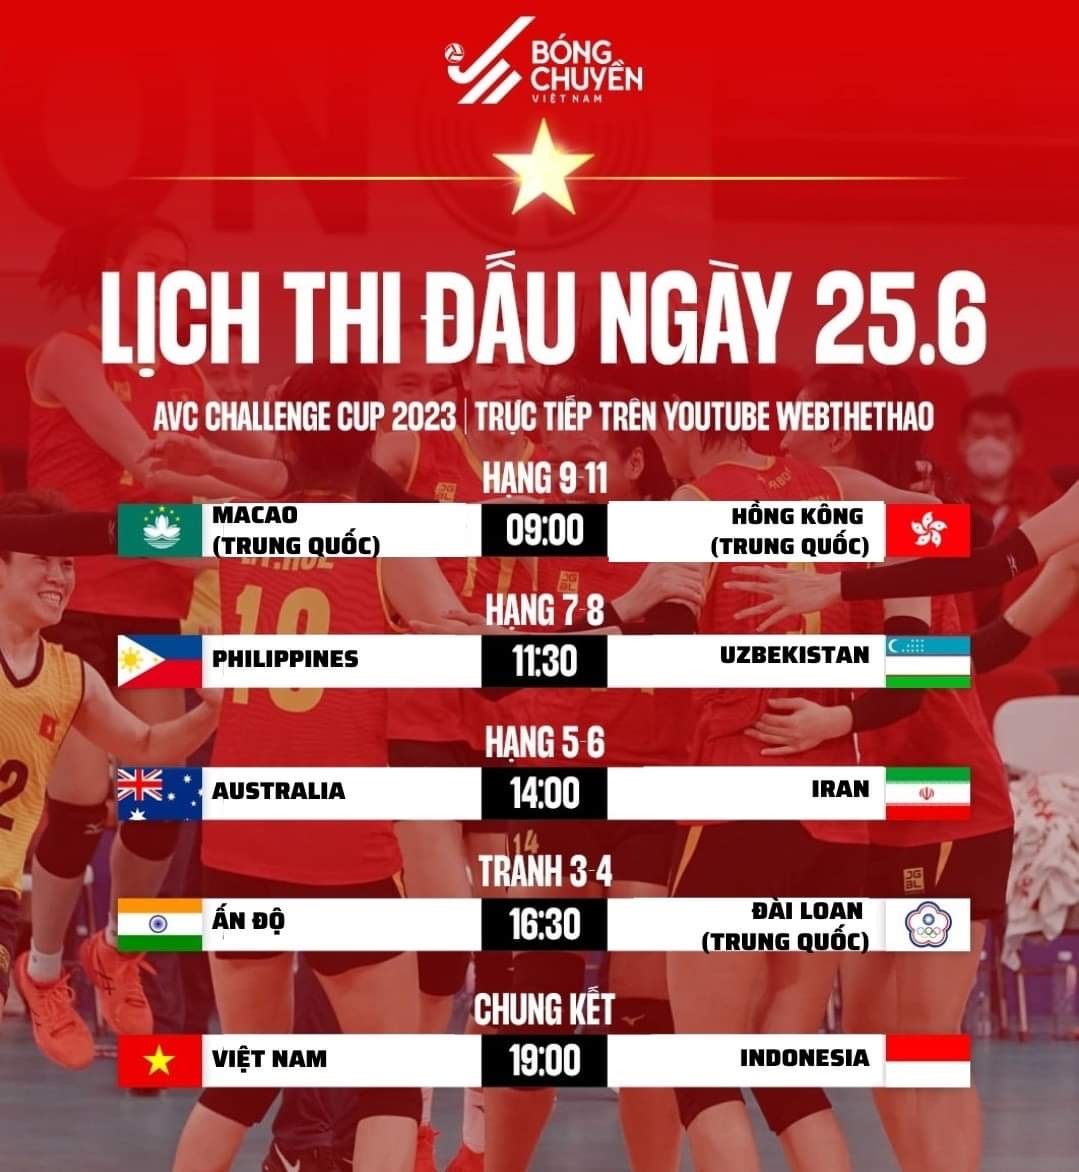 Lịch thi đấu bóng chuyền nữ Việt Nam tại chung kết AVC Challenge Cup 2023